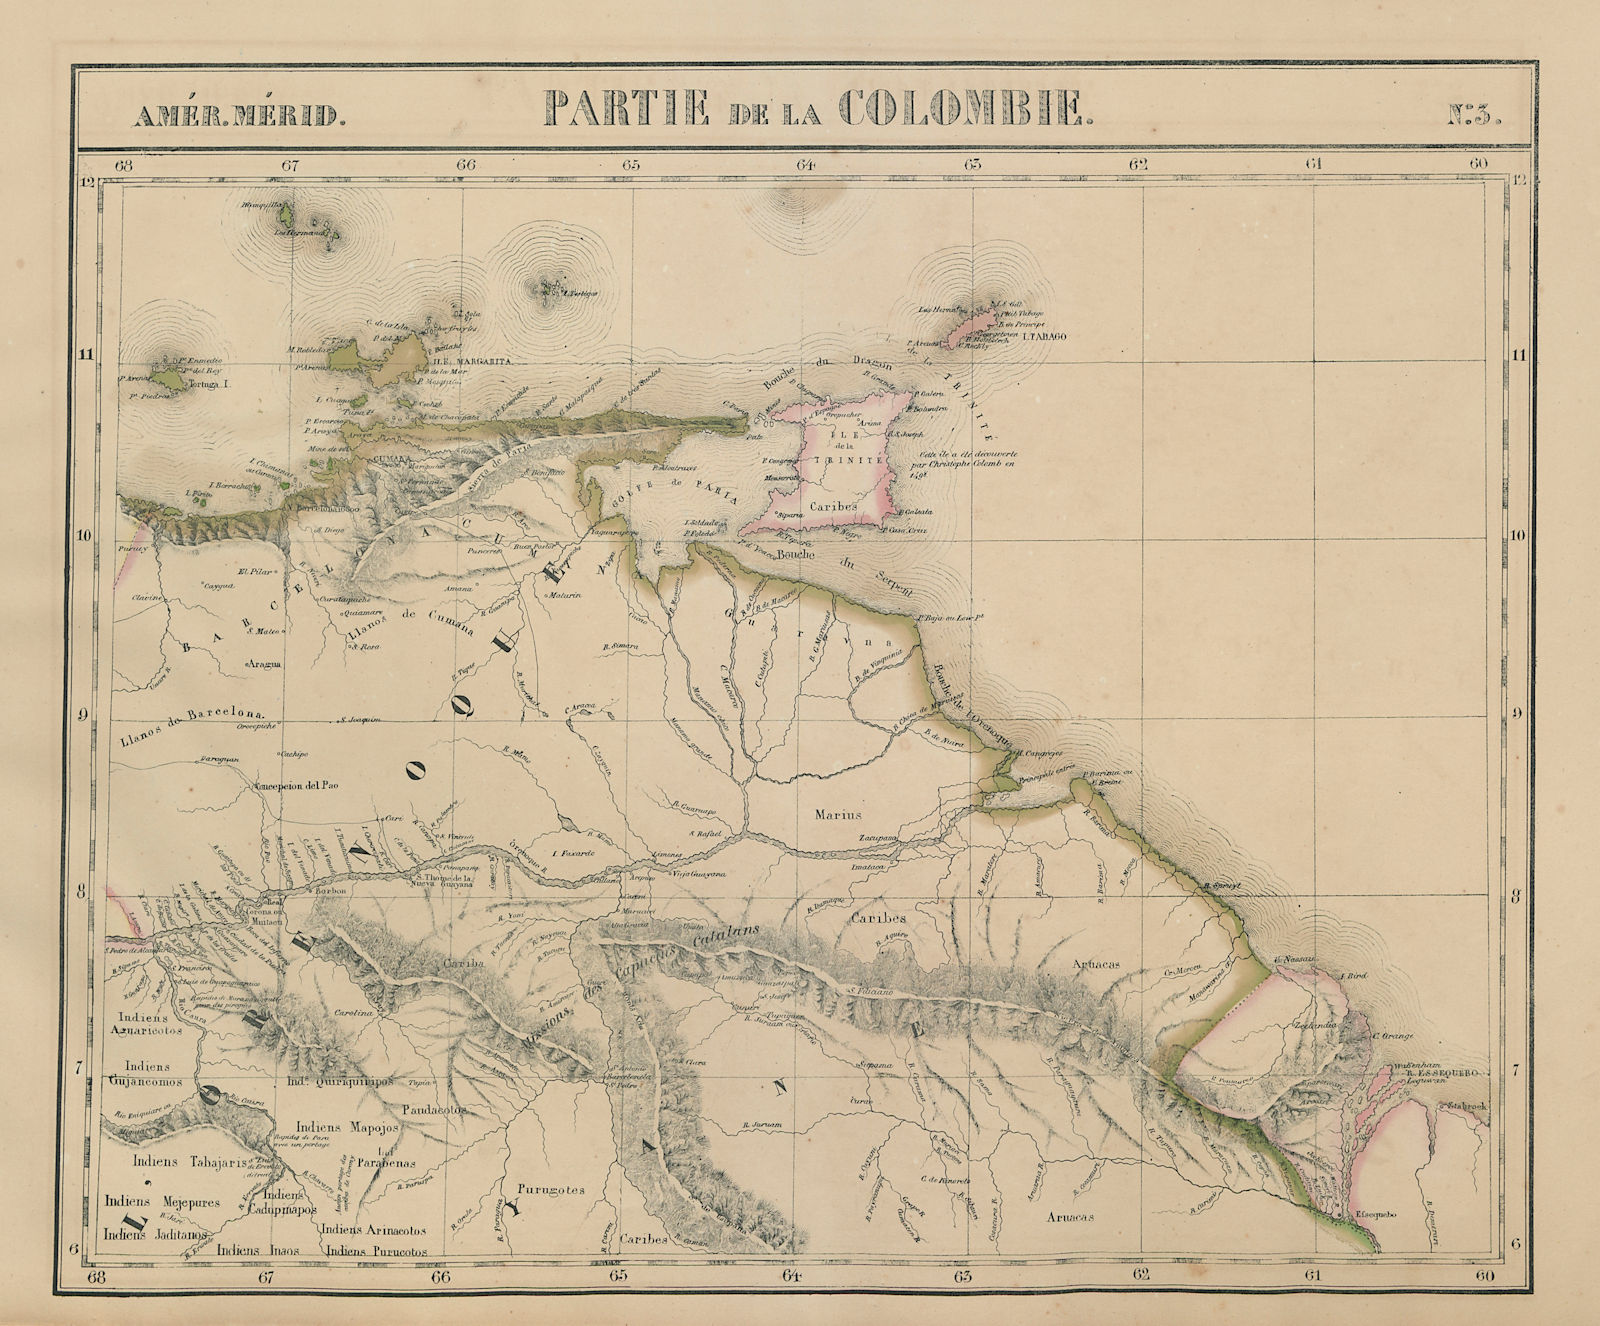 Amér. Mér. Colombie #3. Venezuela Guyana Trinidad & Tobago VANDERMAELEN 1827 map